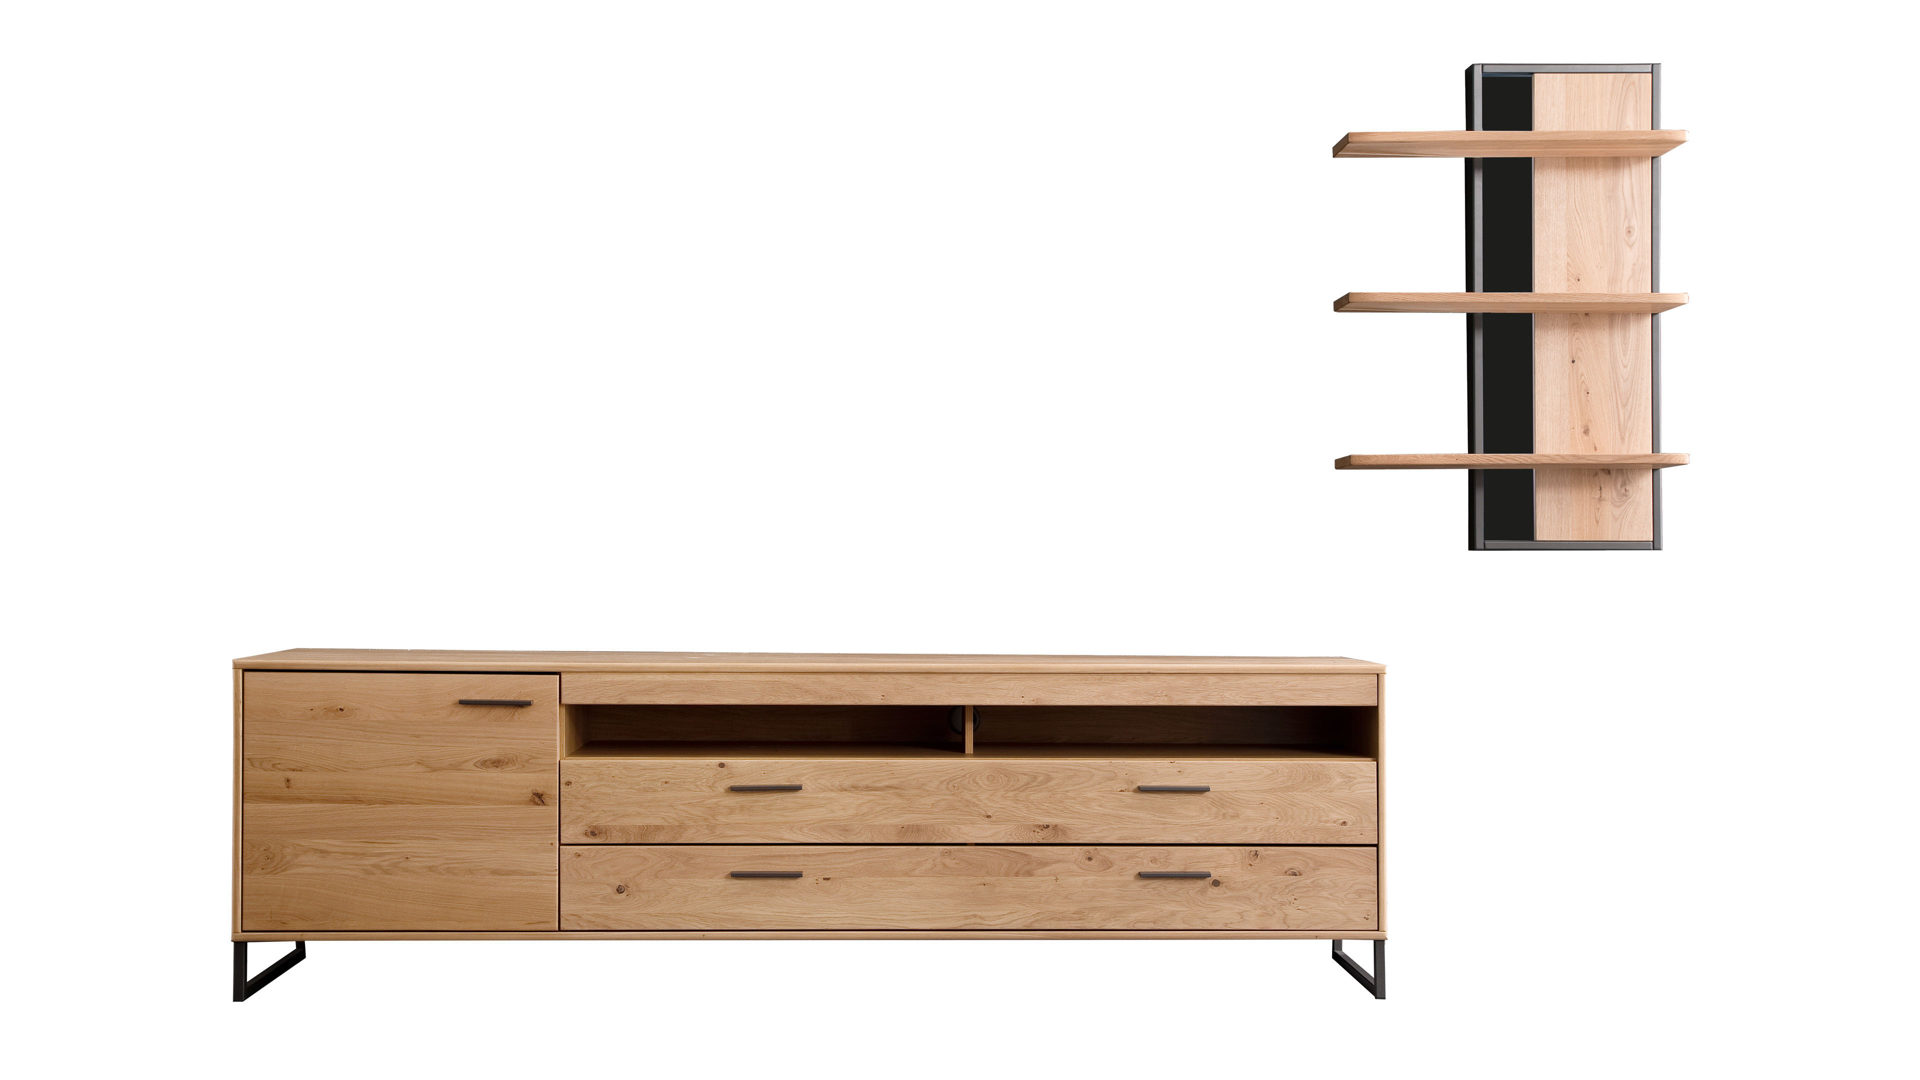 Wohnwand Mca furniture aus Holz in Holzfarben Wohnkombination Bianco geölte Asteiche & anthrazitfarbene Lackoberflächen – zweiteilig